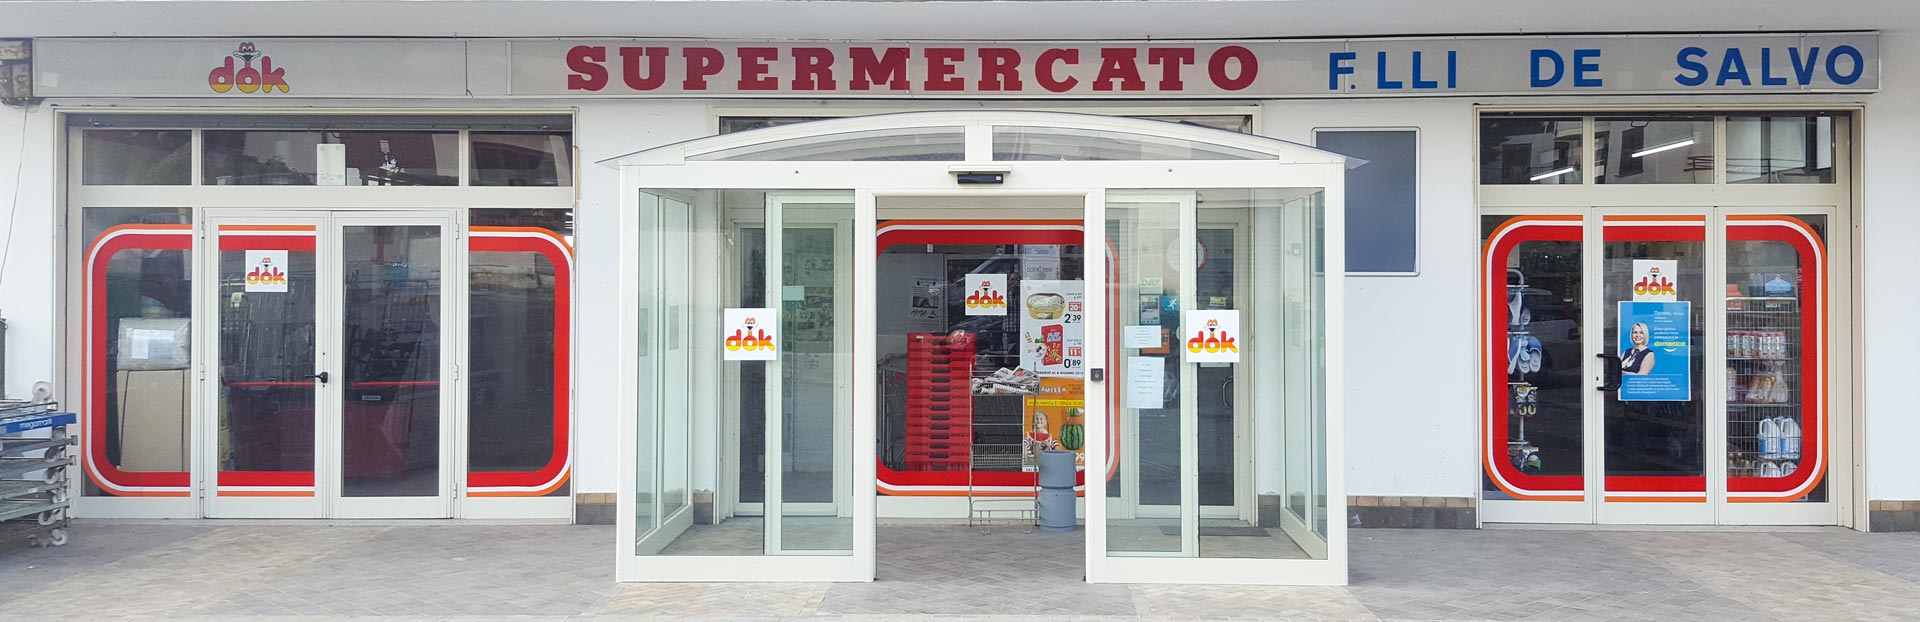 supermercato-dok-de-salvo-salumi-chiaromonte-provincia-di-potenza-alimentari-salumeria-macelleria-ortofrutta-buonipasto-basilicata